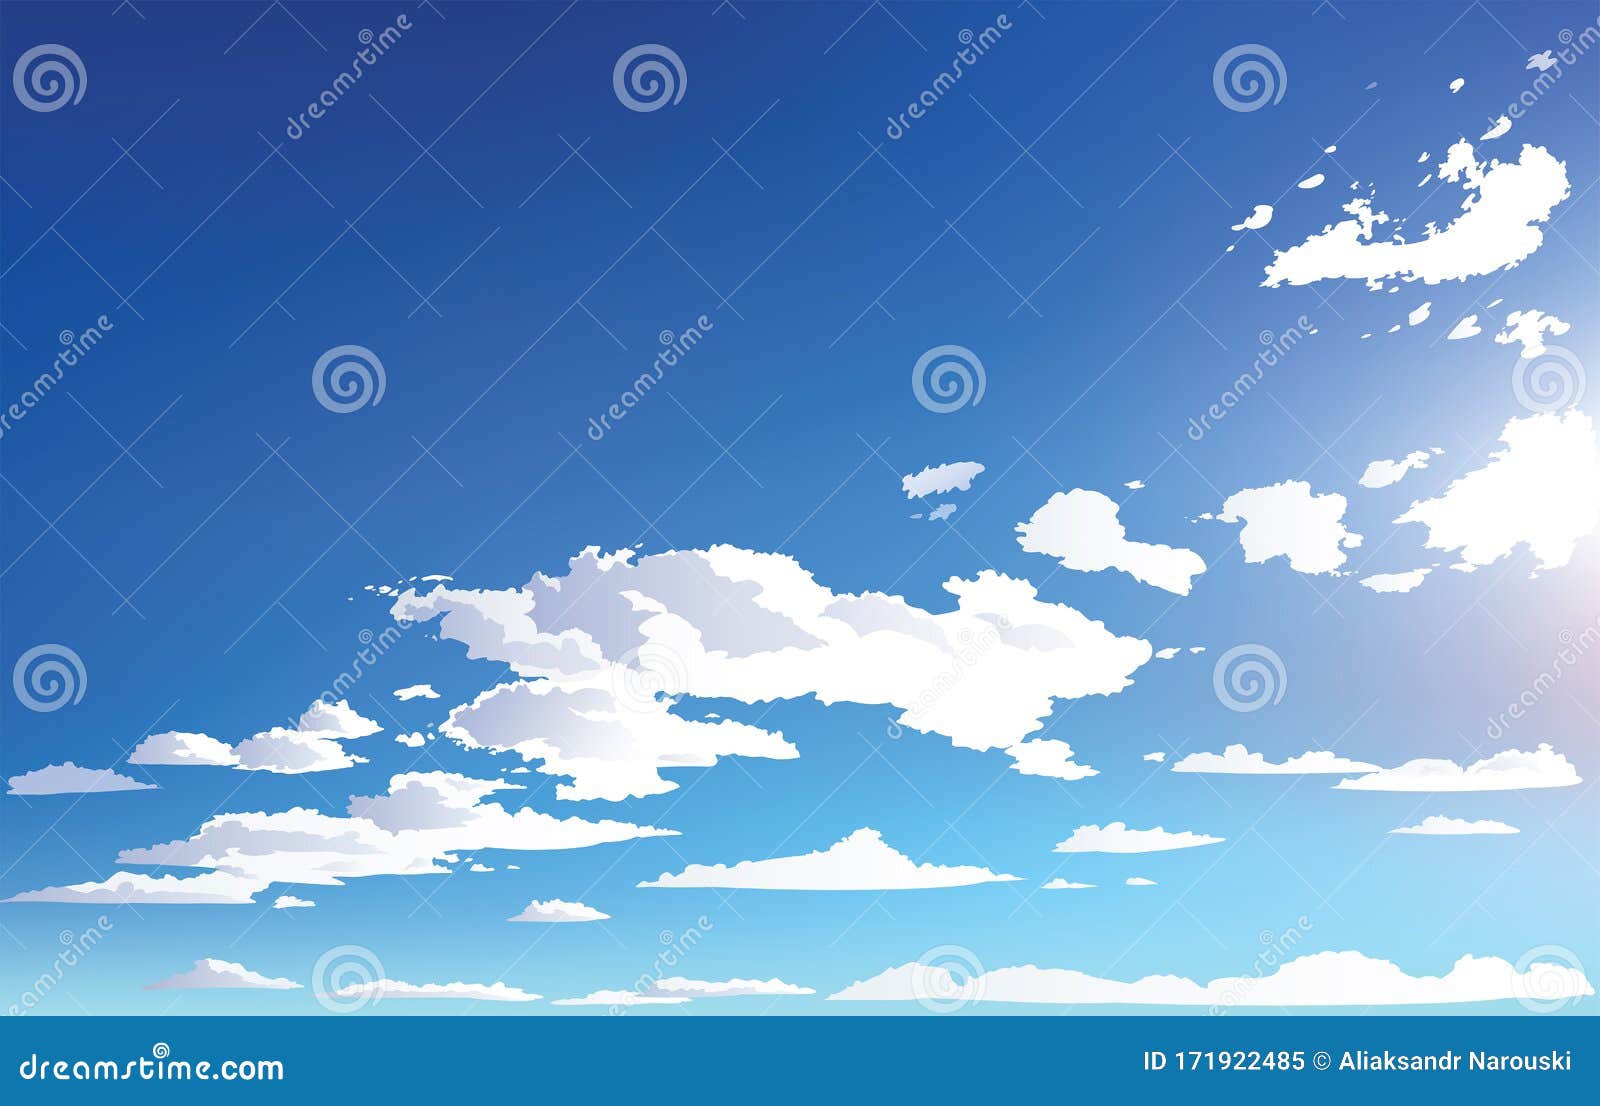 Bạn là một fan anime đích thực? Hãy truy cập ngay vào chủ đề thiết kế nền anime cảnh quan đồng quê trời mây của chúng tôi. Với những hình ảnh xinh đẹp và những cảnh quan tuyệt đẹp, hứa hẹn sẽ đem lại cho bạn những cảm xúc tuyệt vời!